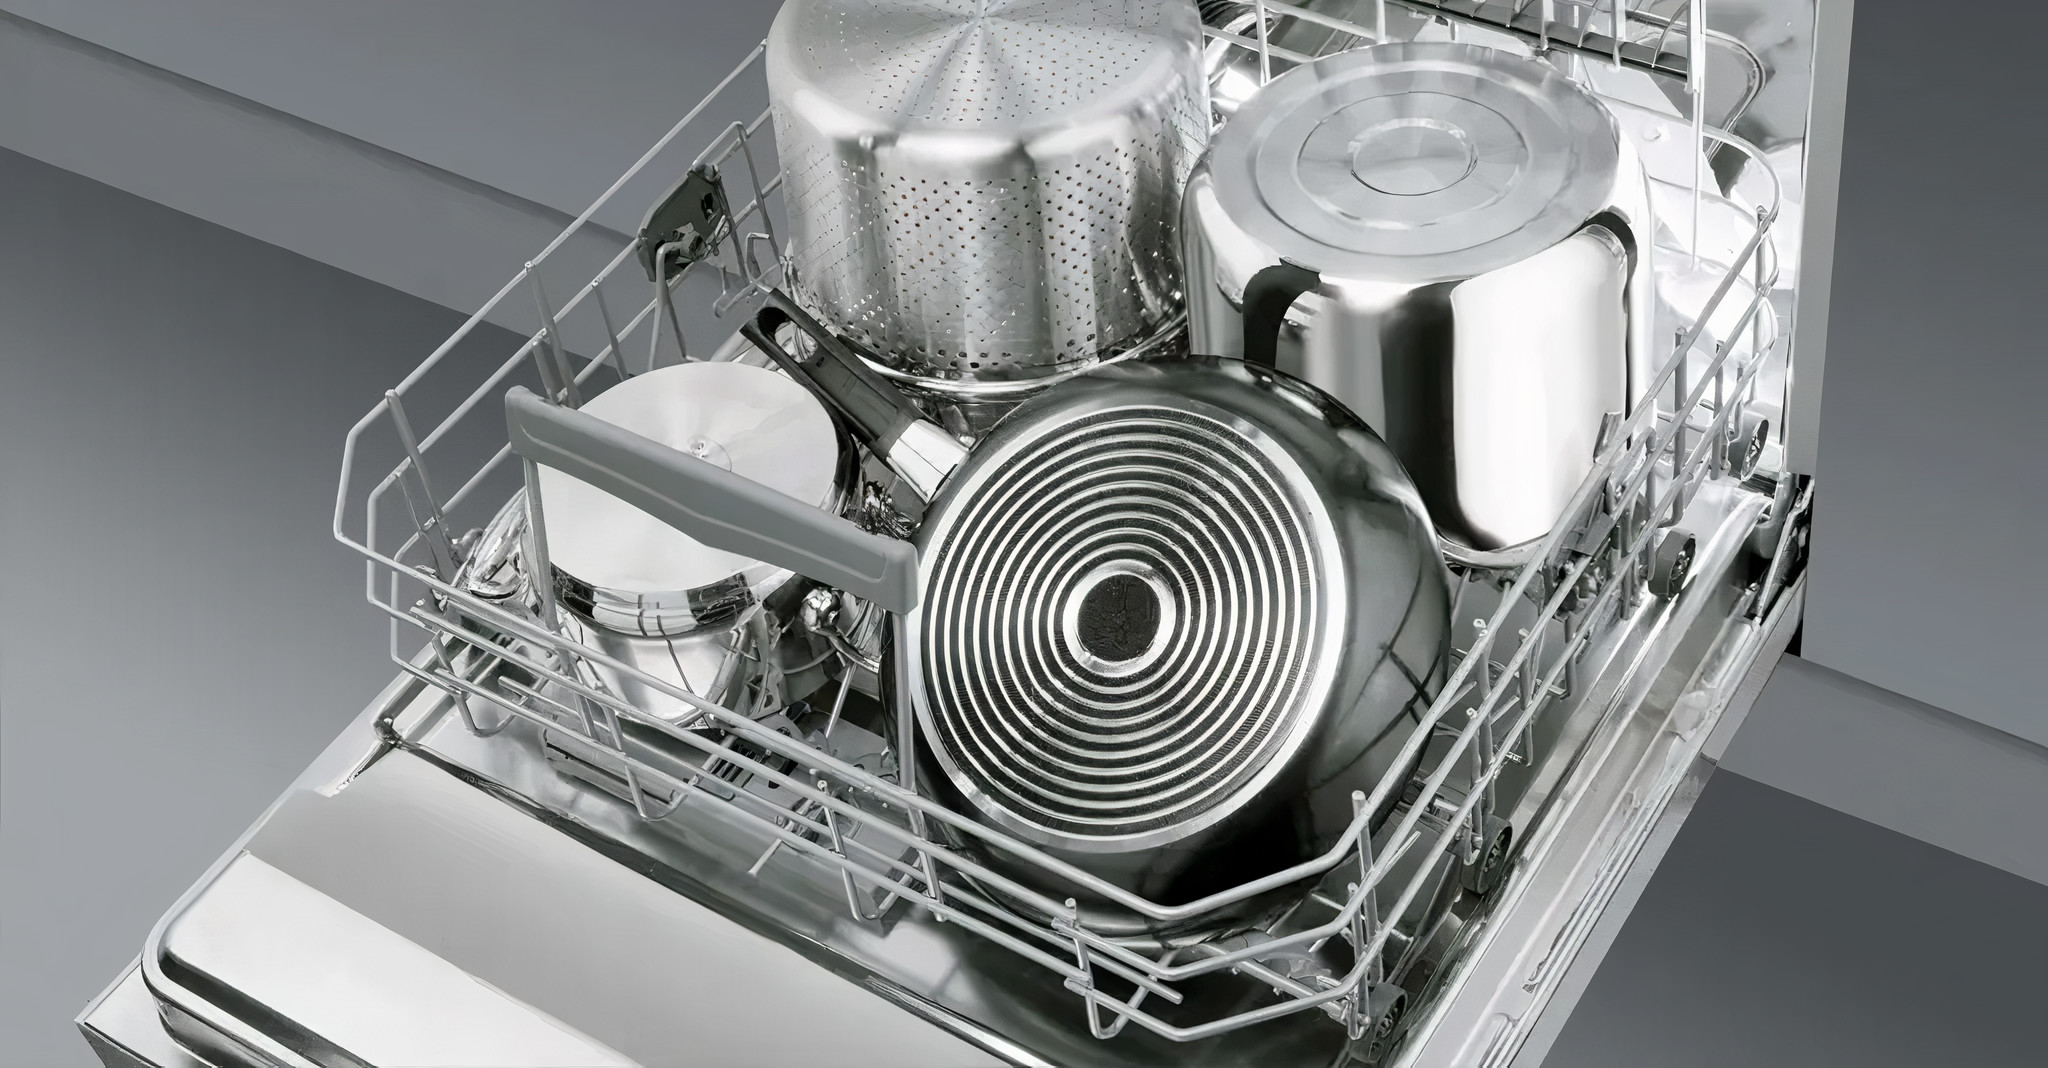 Кастрюли можно мыть в посудомойке. Smeg sta6539l3. Расположение посуды в посудомойке 45 см. Правильная загрузка посудомоечной машины бош. Расположение посуды в посудомоечной машине Bosch 60 см.